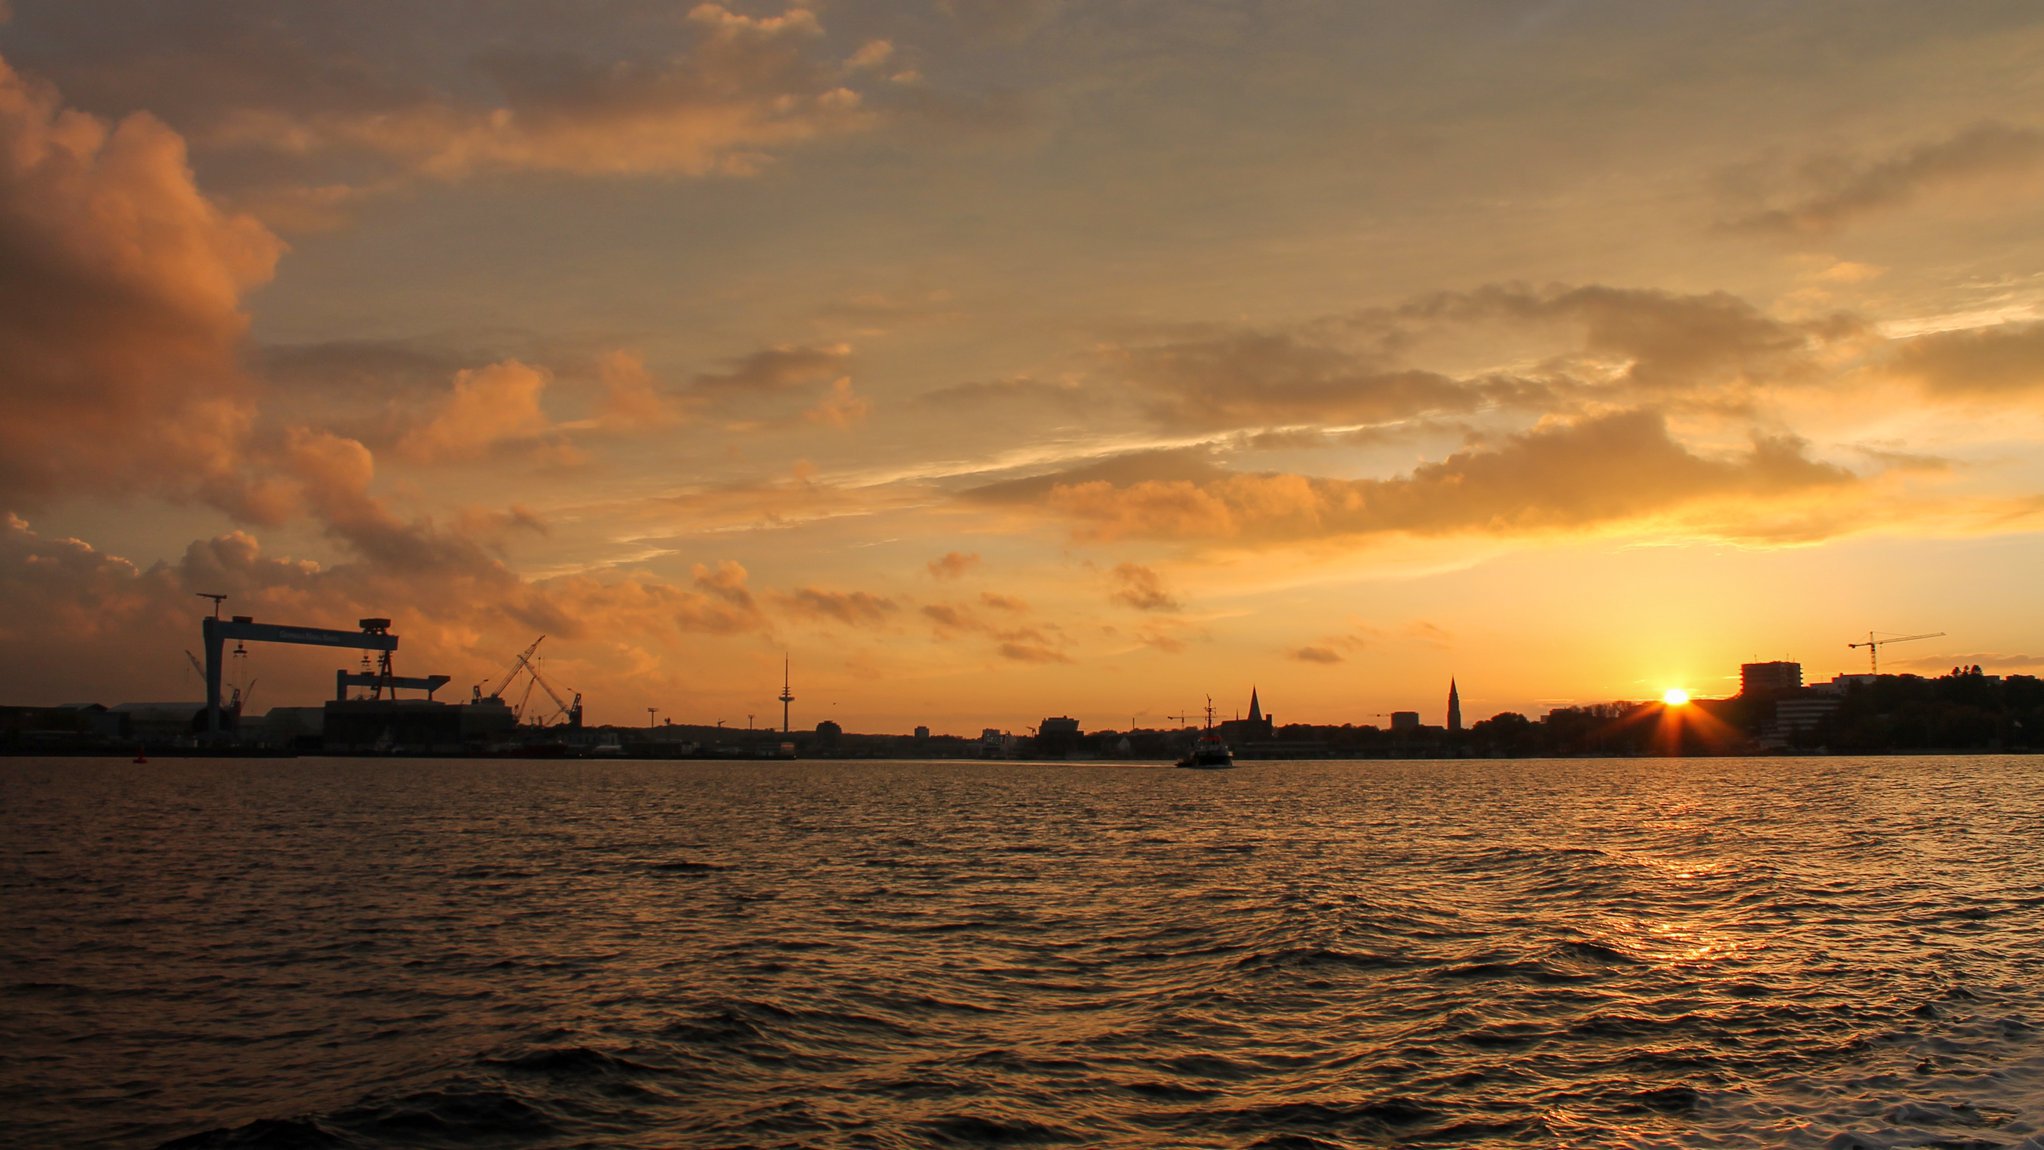 Skyline von Kiel im Sonnenuntergang, von der Kieler Förde aus